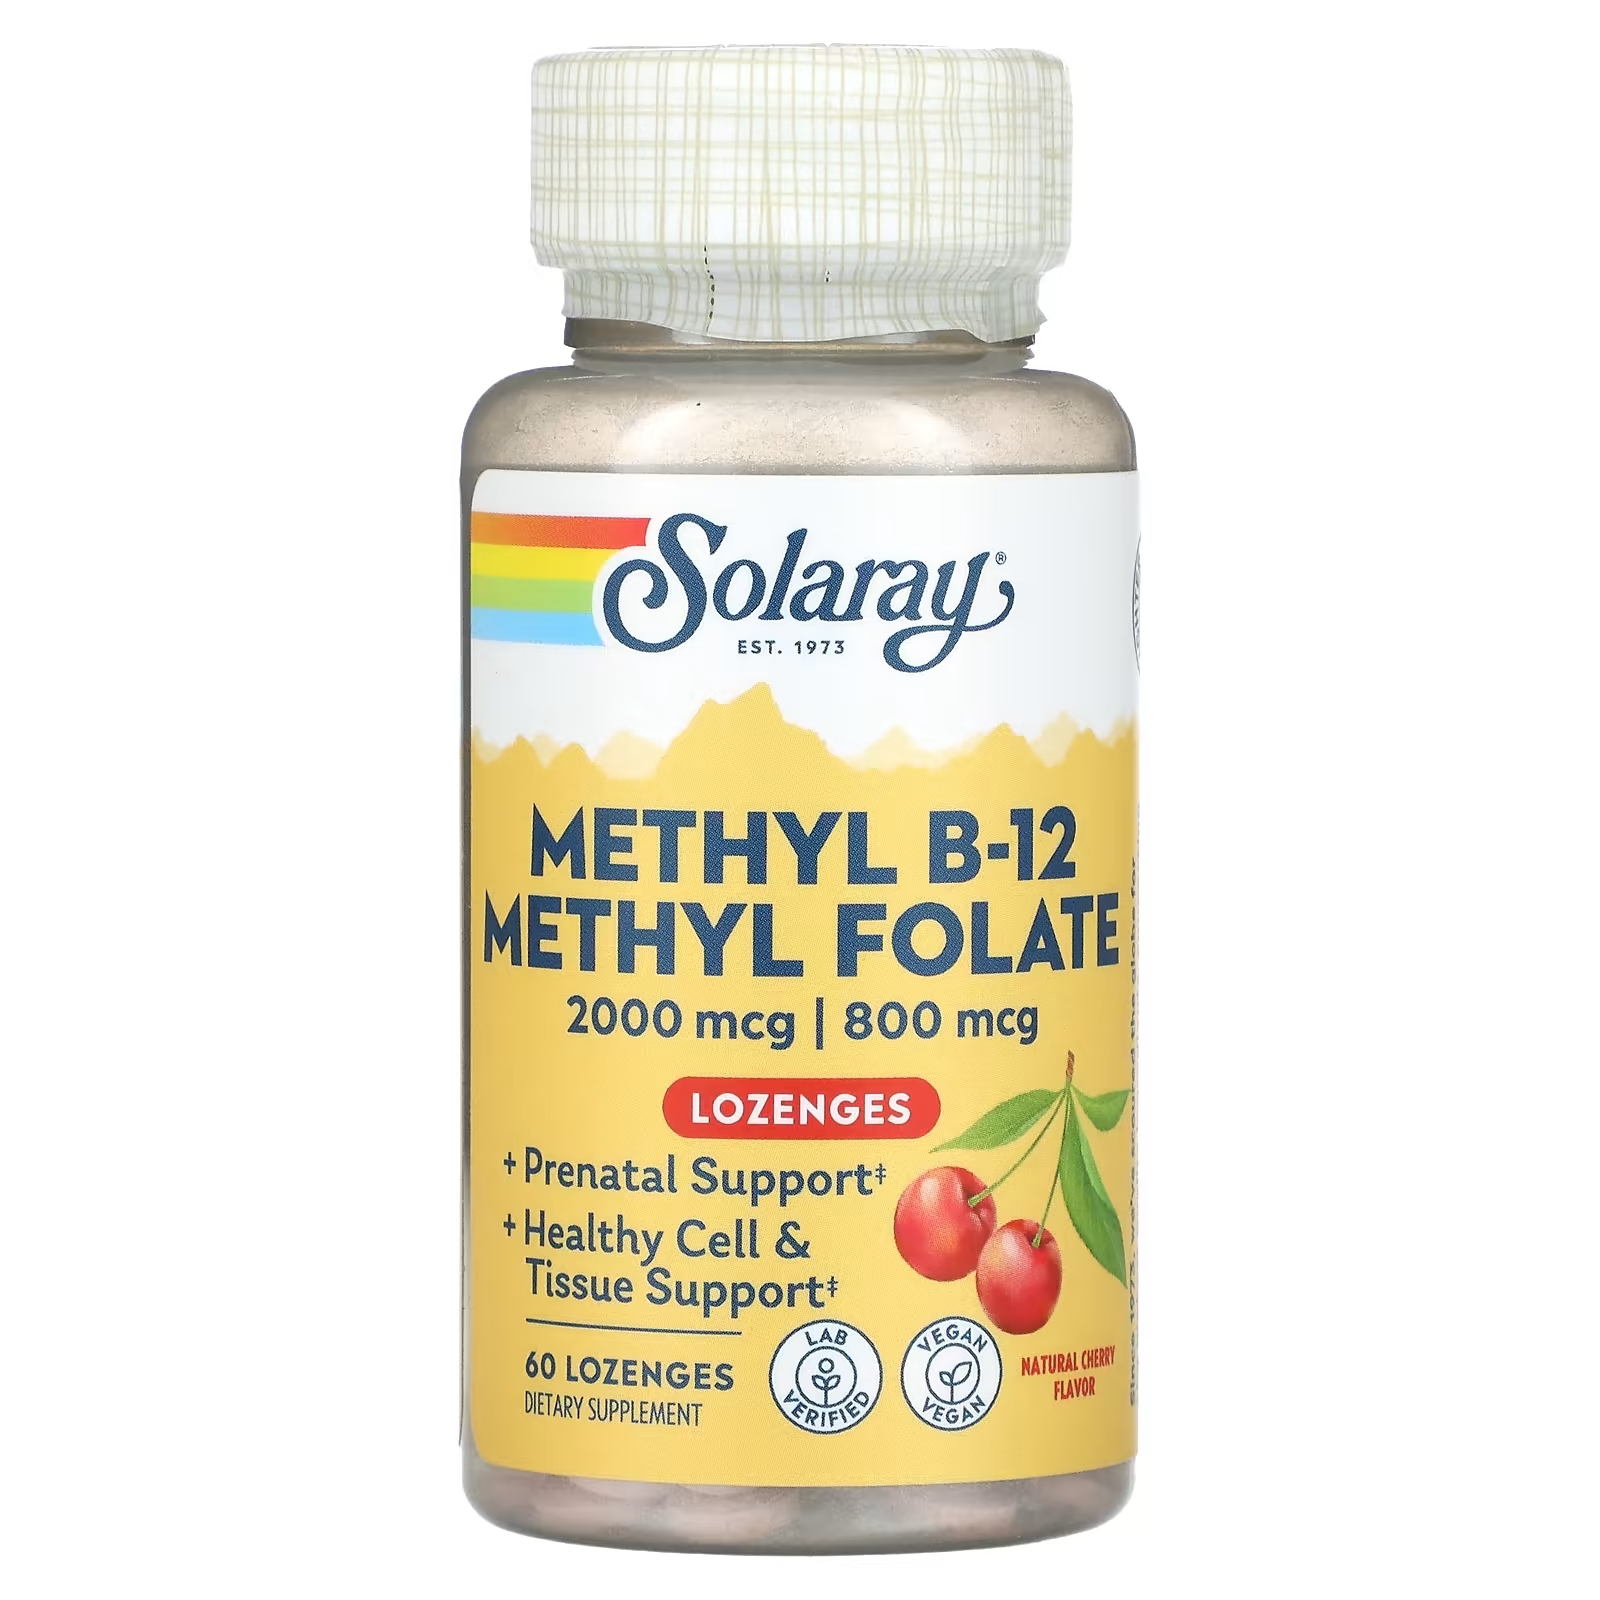 Solaray Метилфолат метил B-12 натуральный вишневый вкус, 60 леденцов